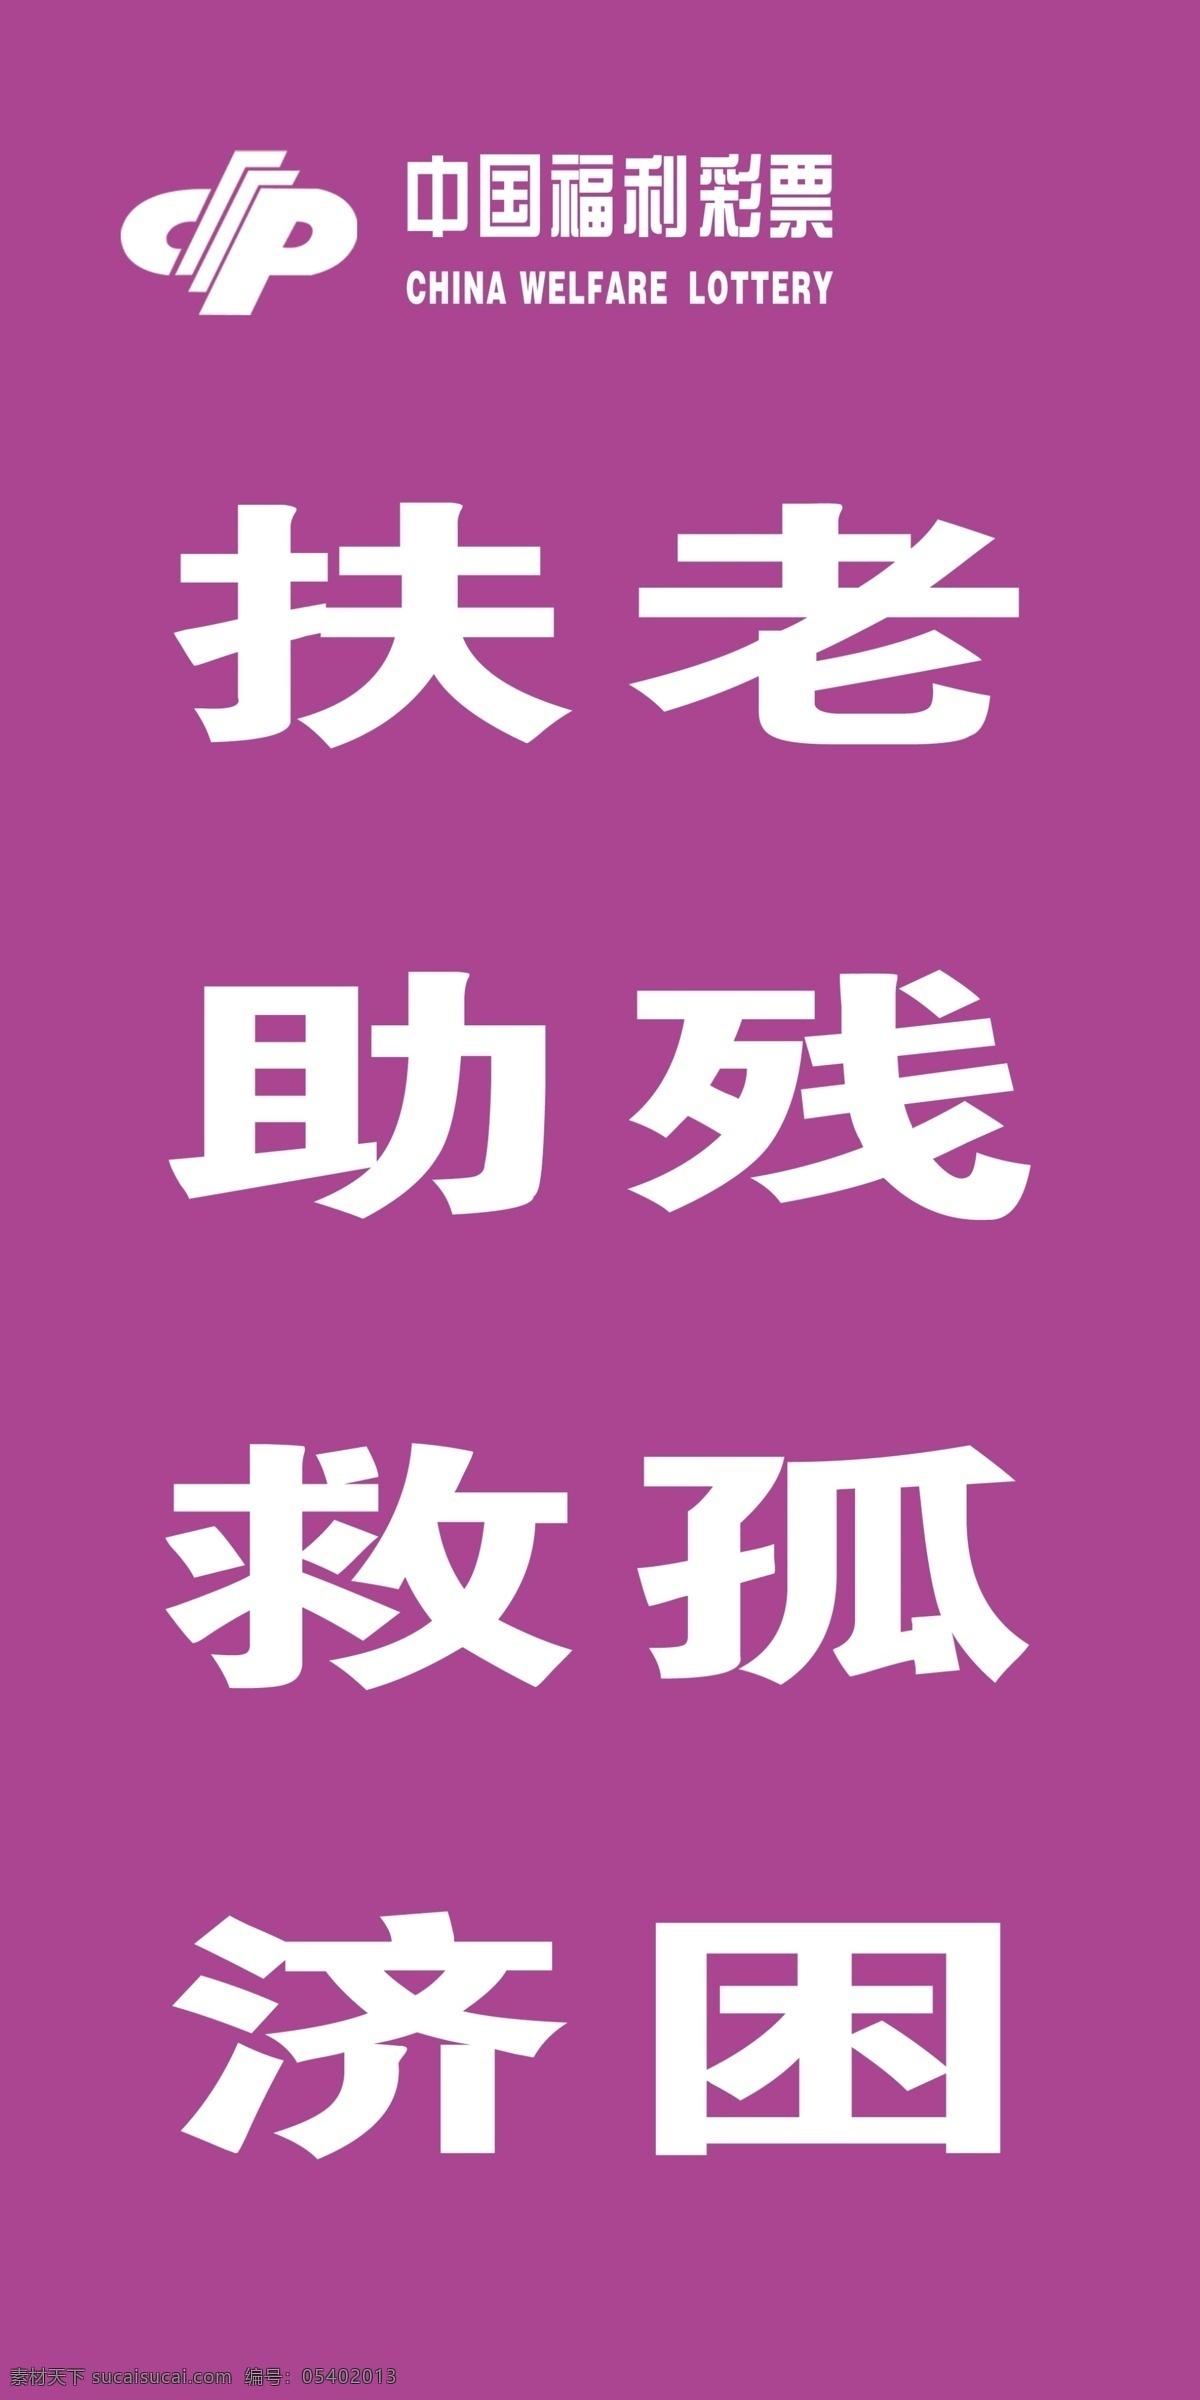 紫色扶老 刀旗 福彩标志 文字 背景颜色 版面 室外广告设计